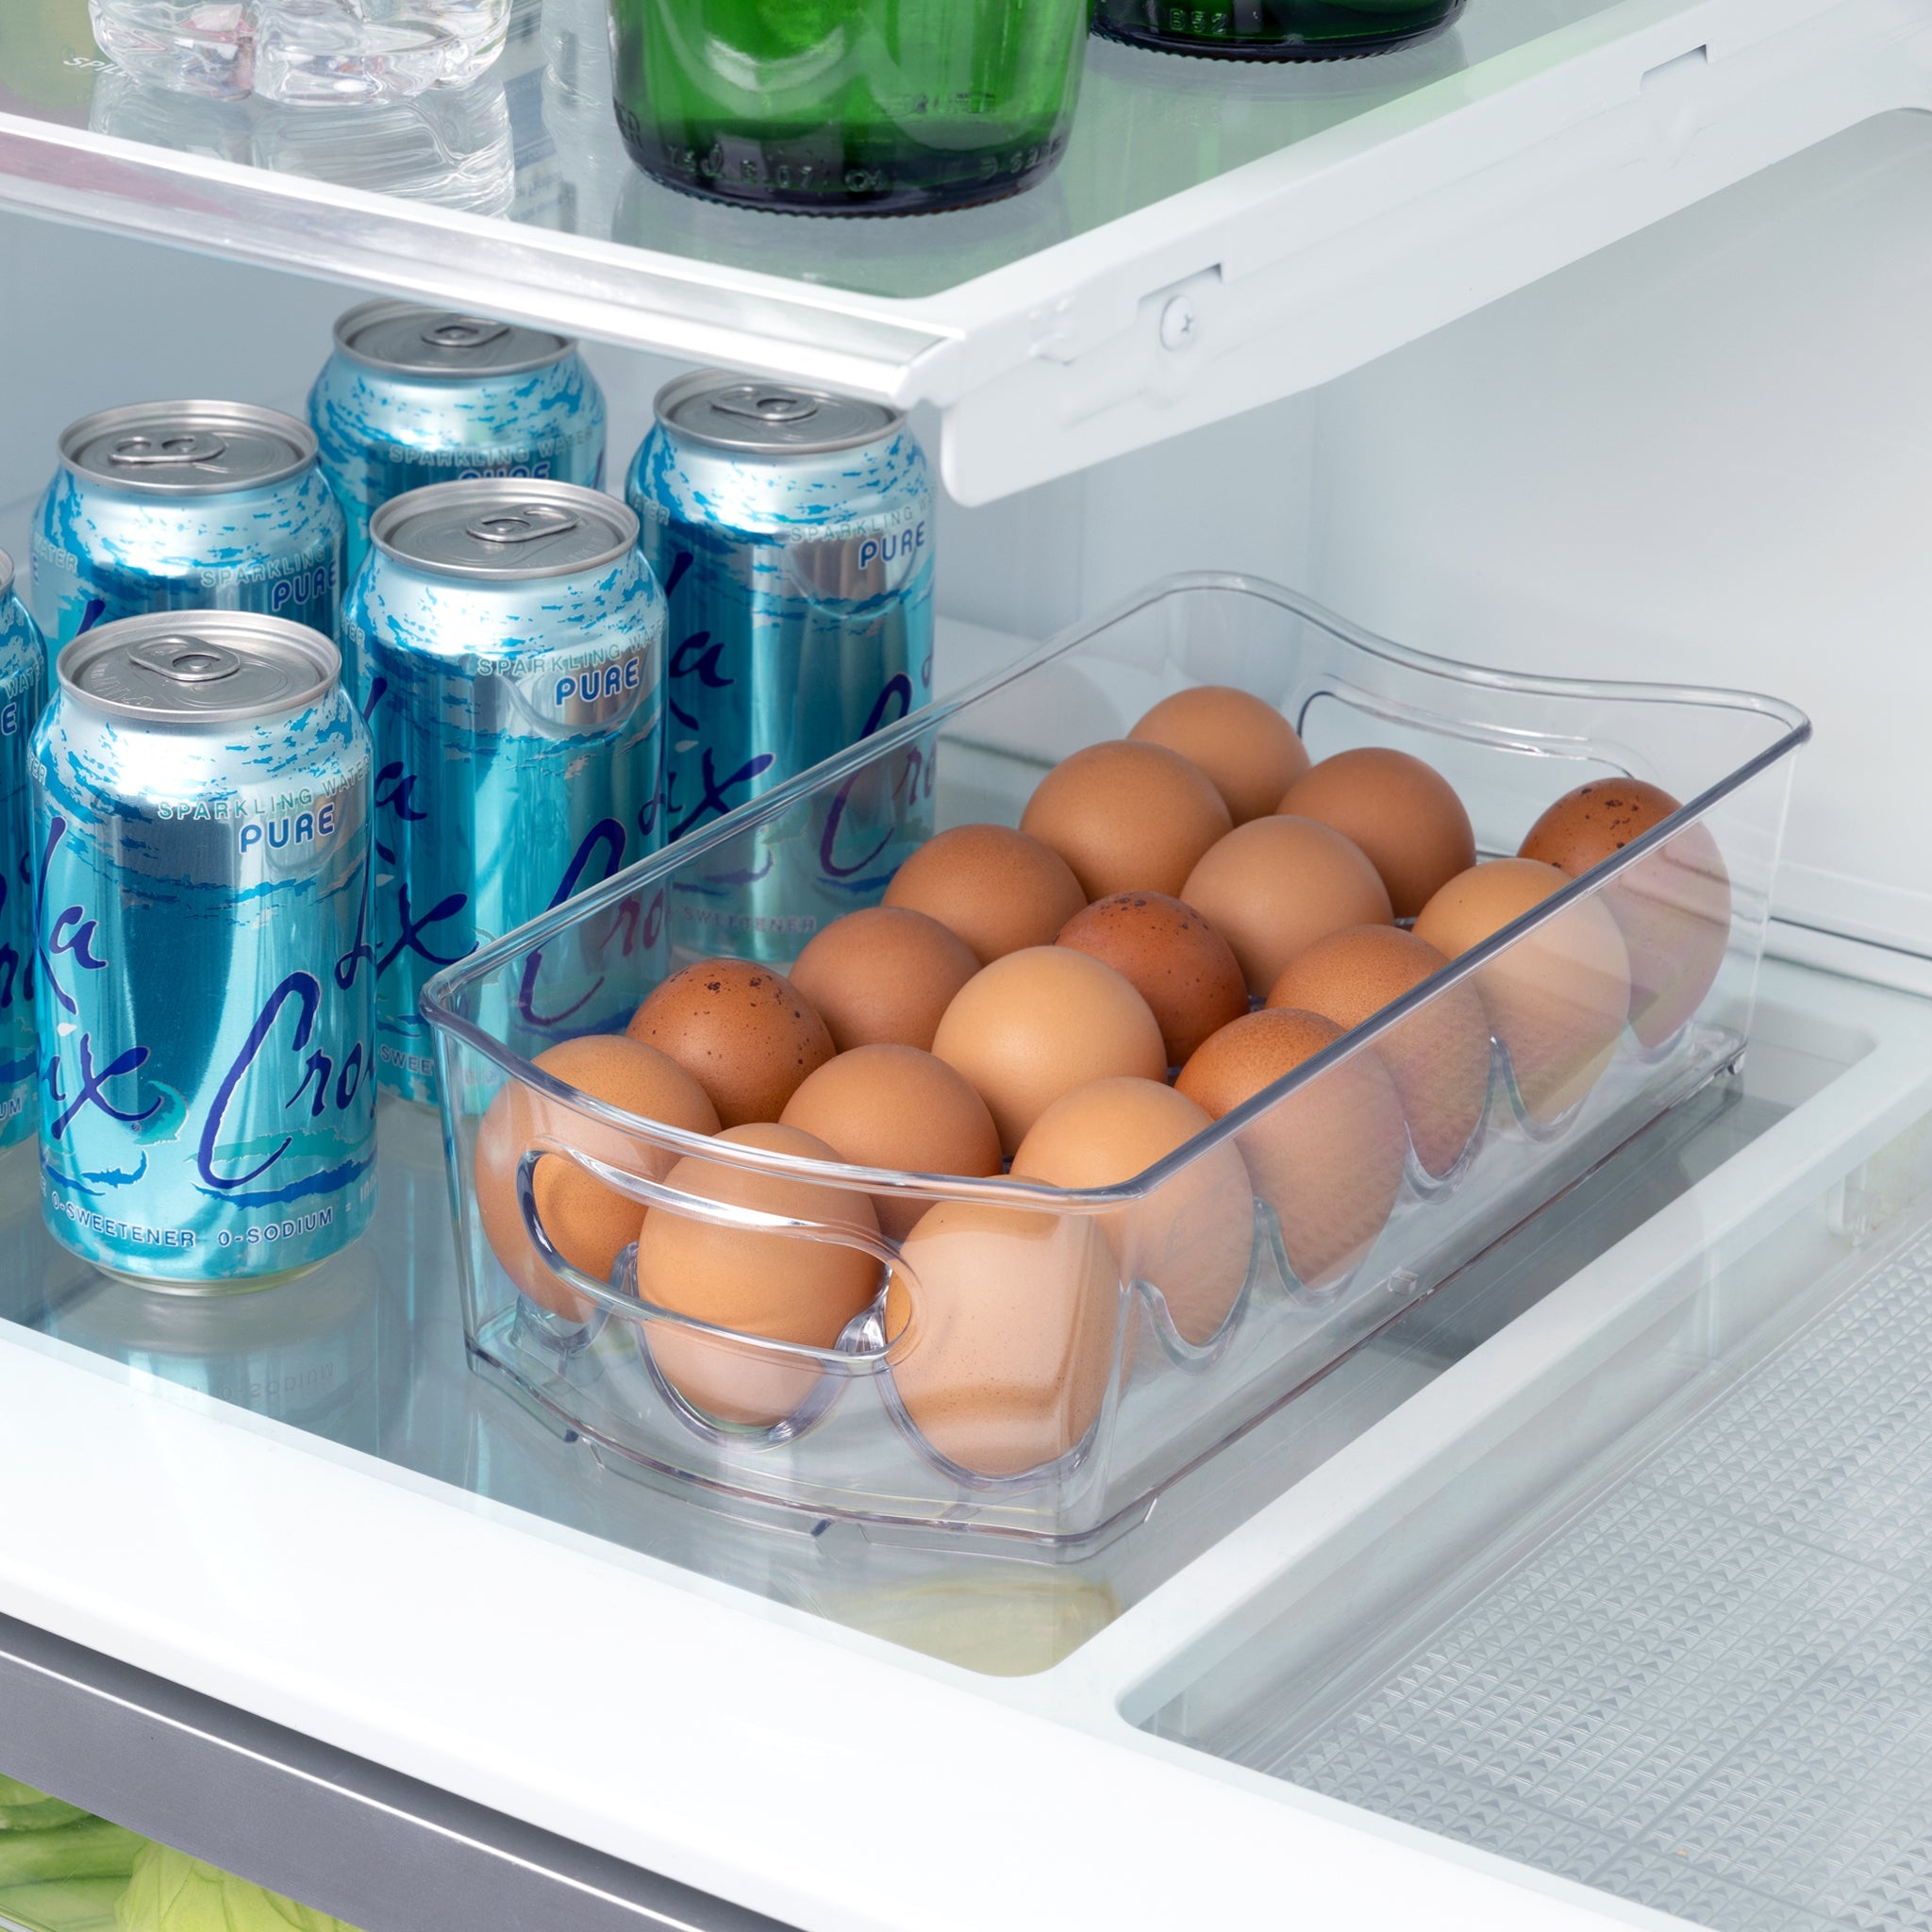 https://www.shopsmartdesign.com/cdn/shop/products/stackable-refrigerator-egg-storage-bin-with-handle-2-pack-smart-design-kitchen-8004291as2-incrementing-number-784535_2048x2048.jpg?v=1679335844